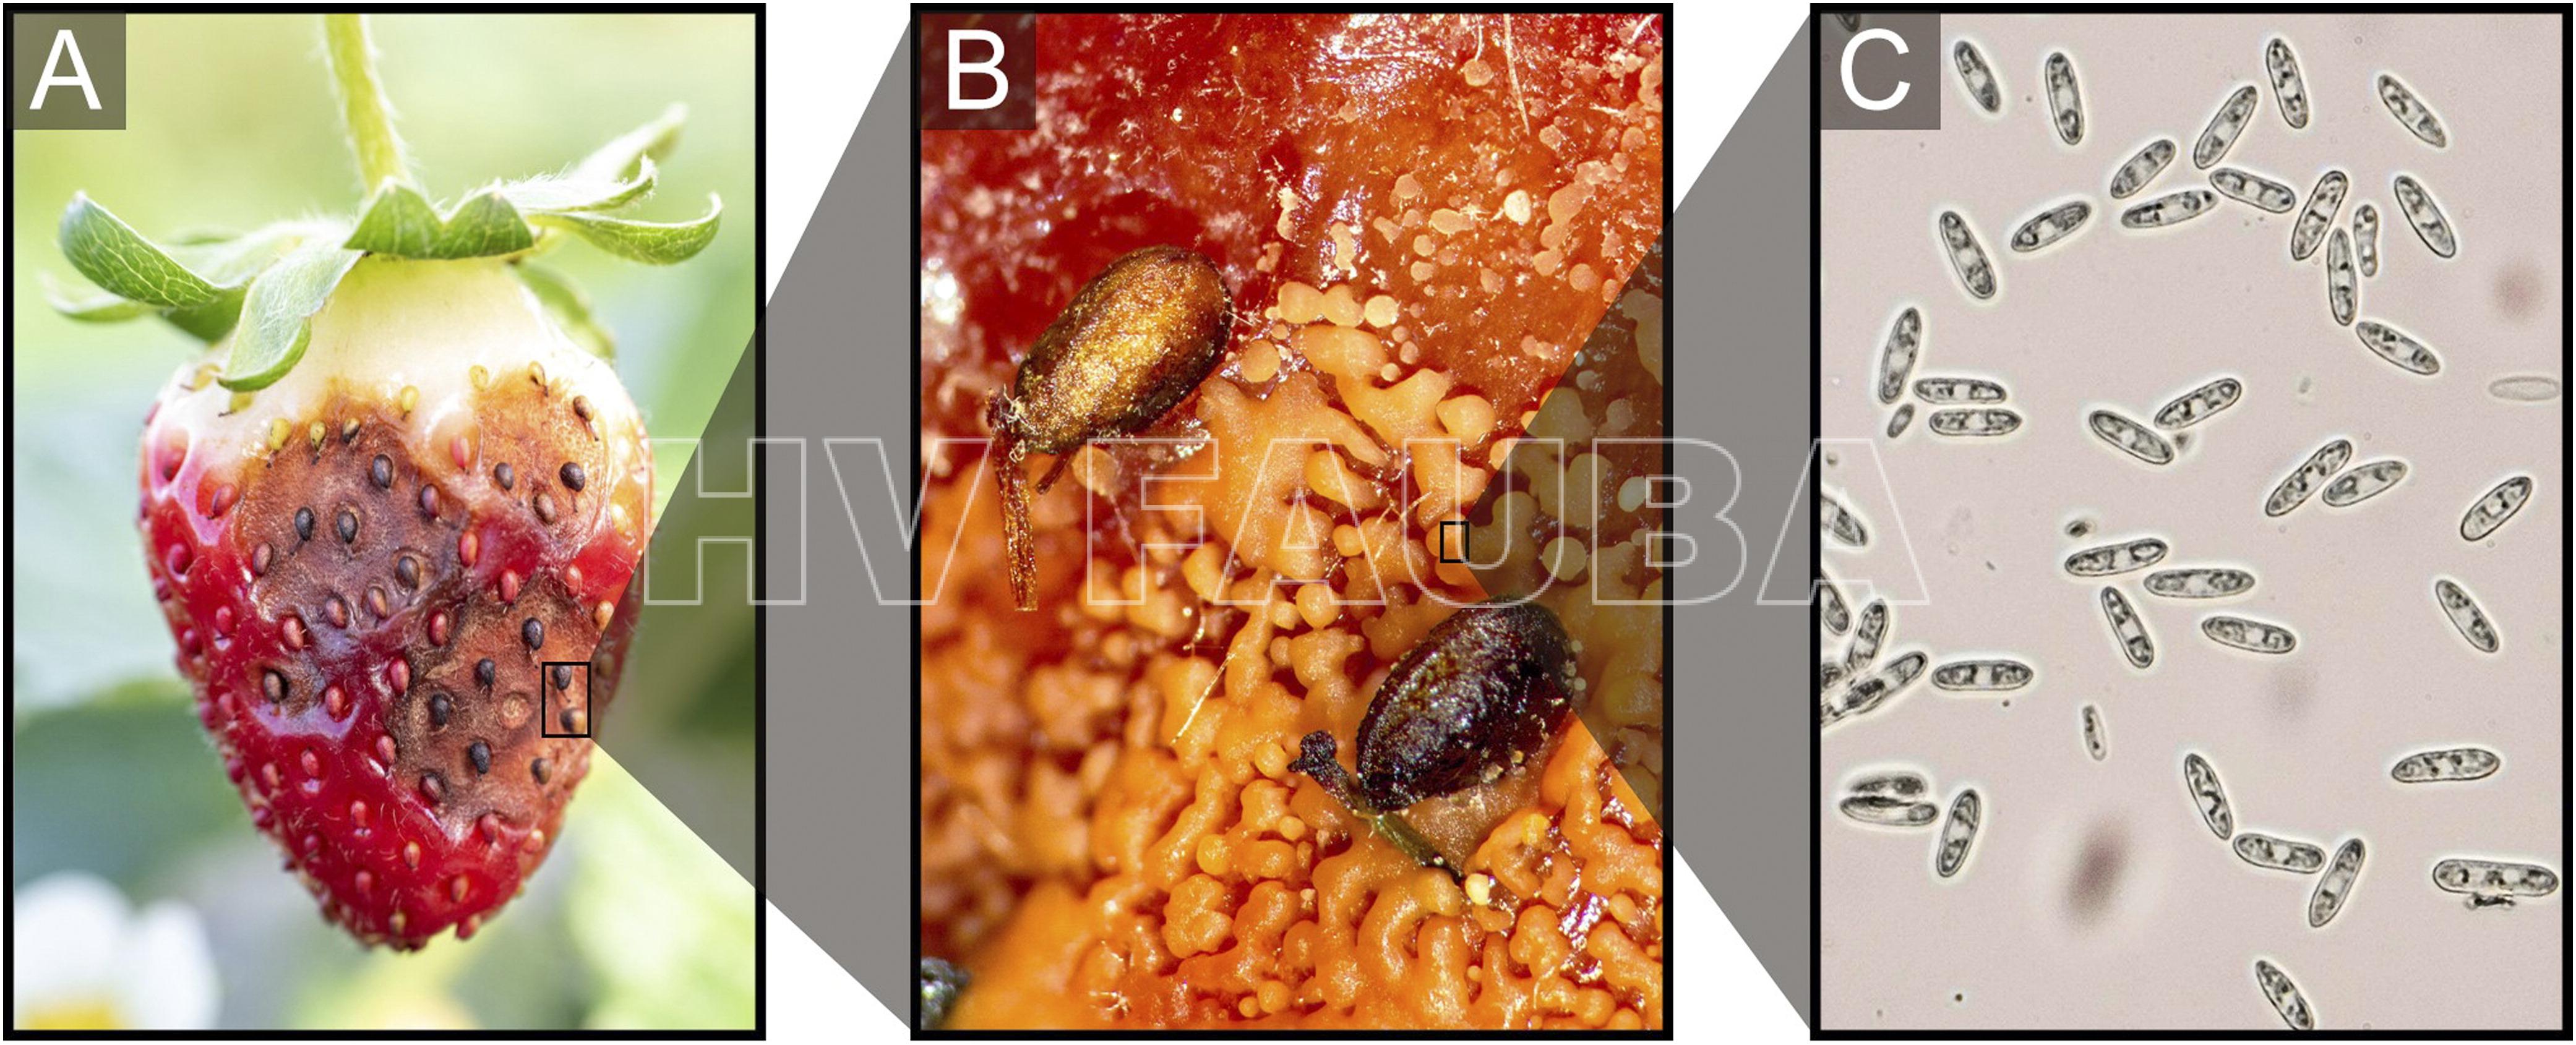 Síntomas y signos de pudrición de frutilla por antracnosis causado por Colletotrichum spp. (A) frutilla madura infectada por C. acutatum; (B) imagen con lupa de masas de esporas (conidios) en matriz mucilaginosa de C. acutatum en una lesión de antracnosis; (C) imagen microscópica de esporas (conidios) de C. acutatum. Autor: Dowling et al., 2020.